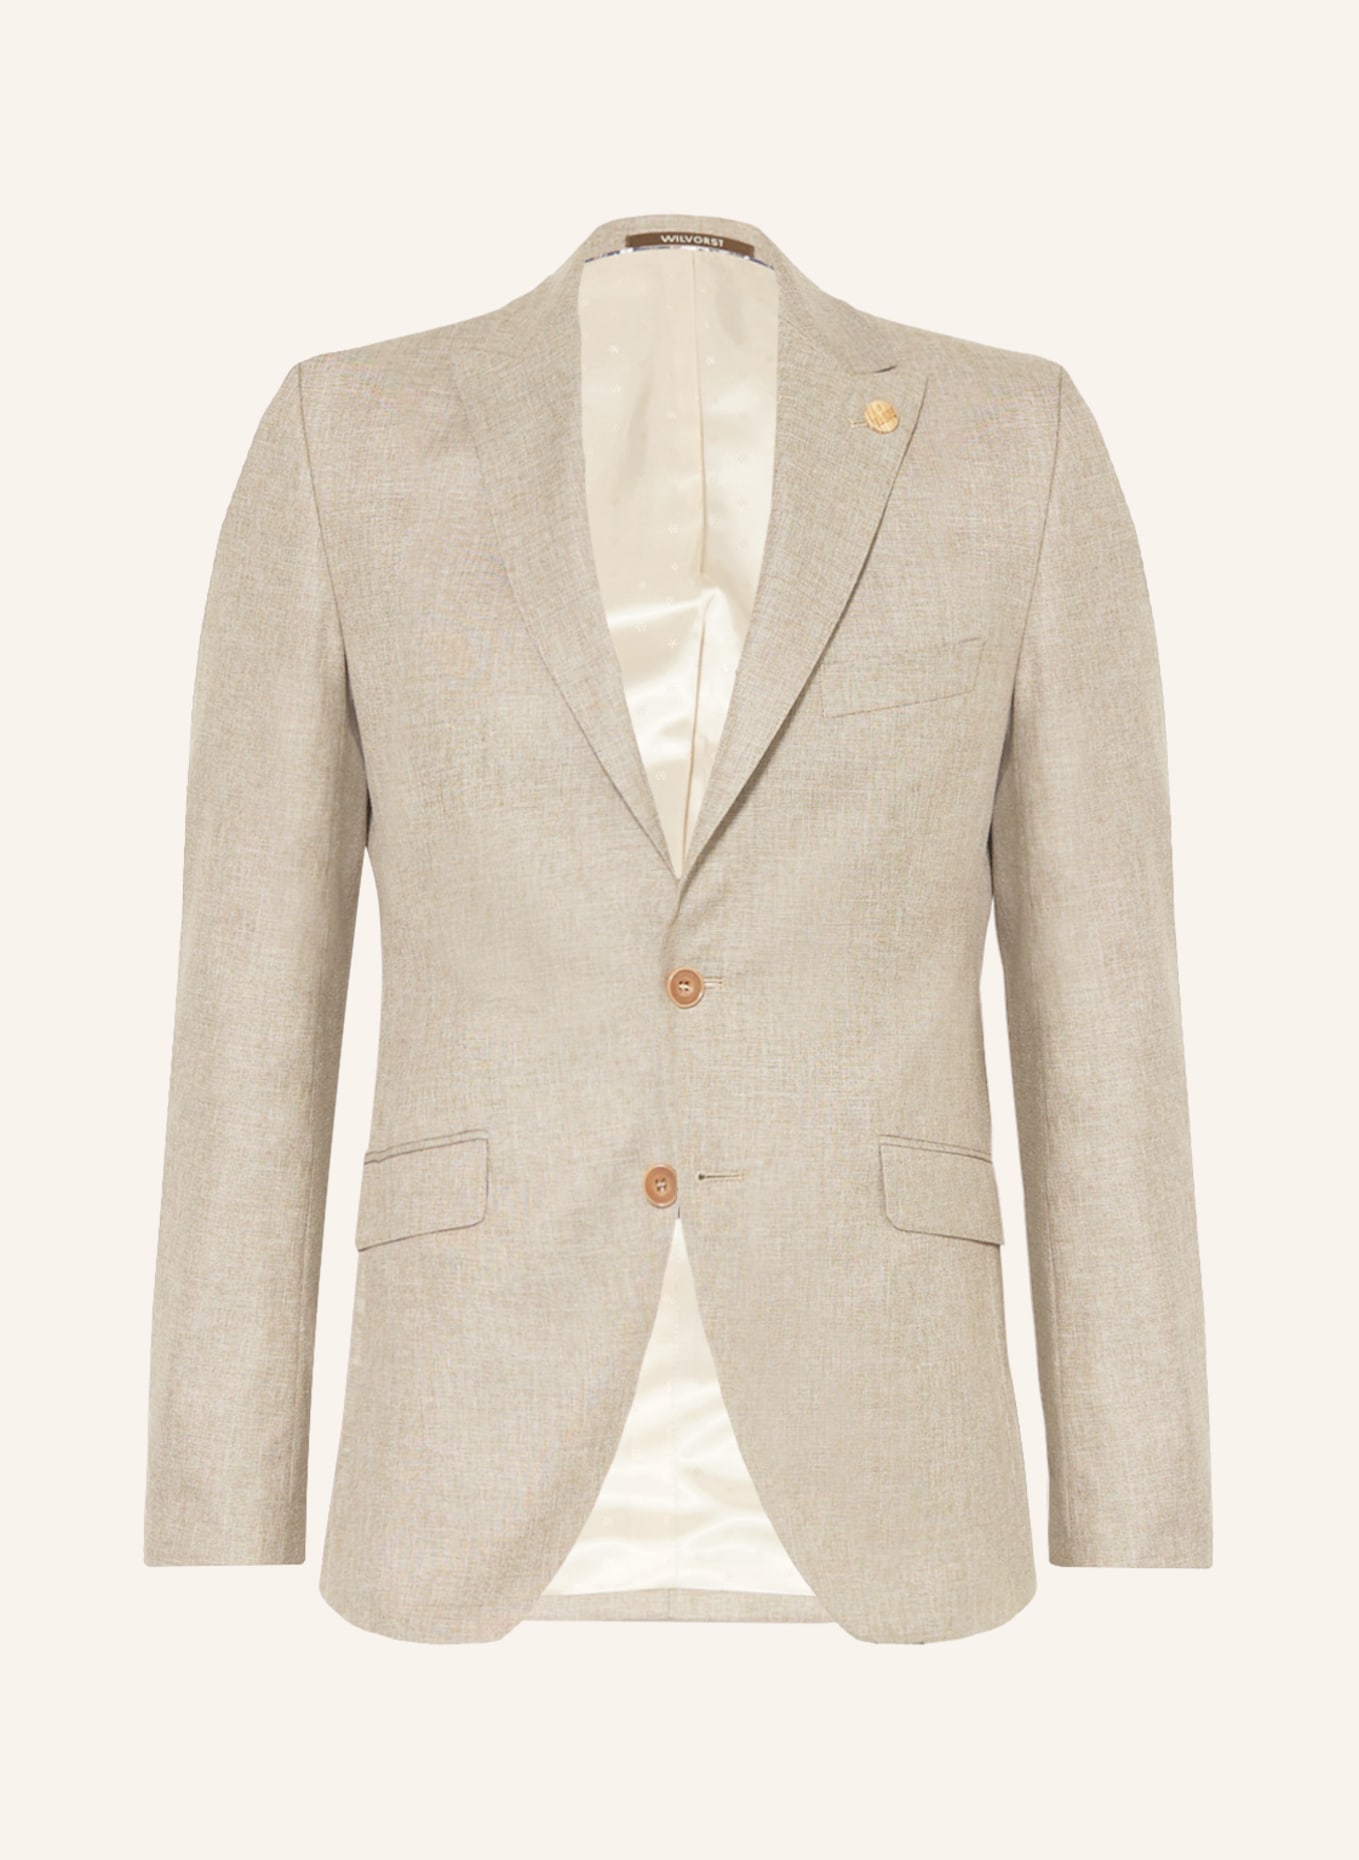 WILVORST Suit jacket extra slim fit, Color: BEIGE (Image 1)